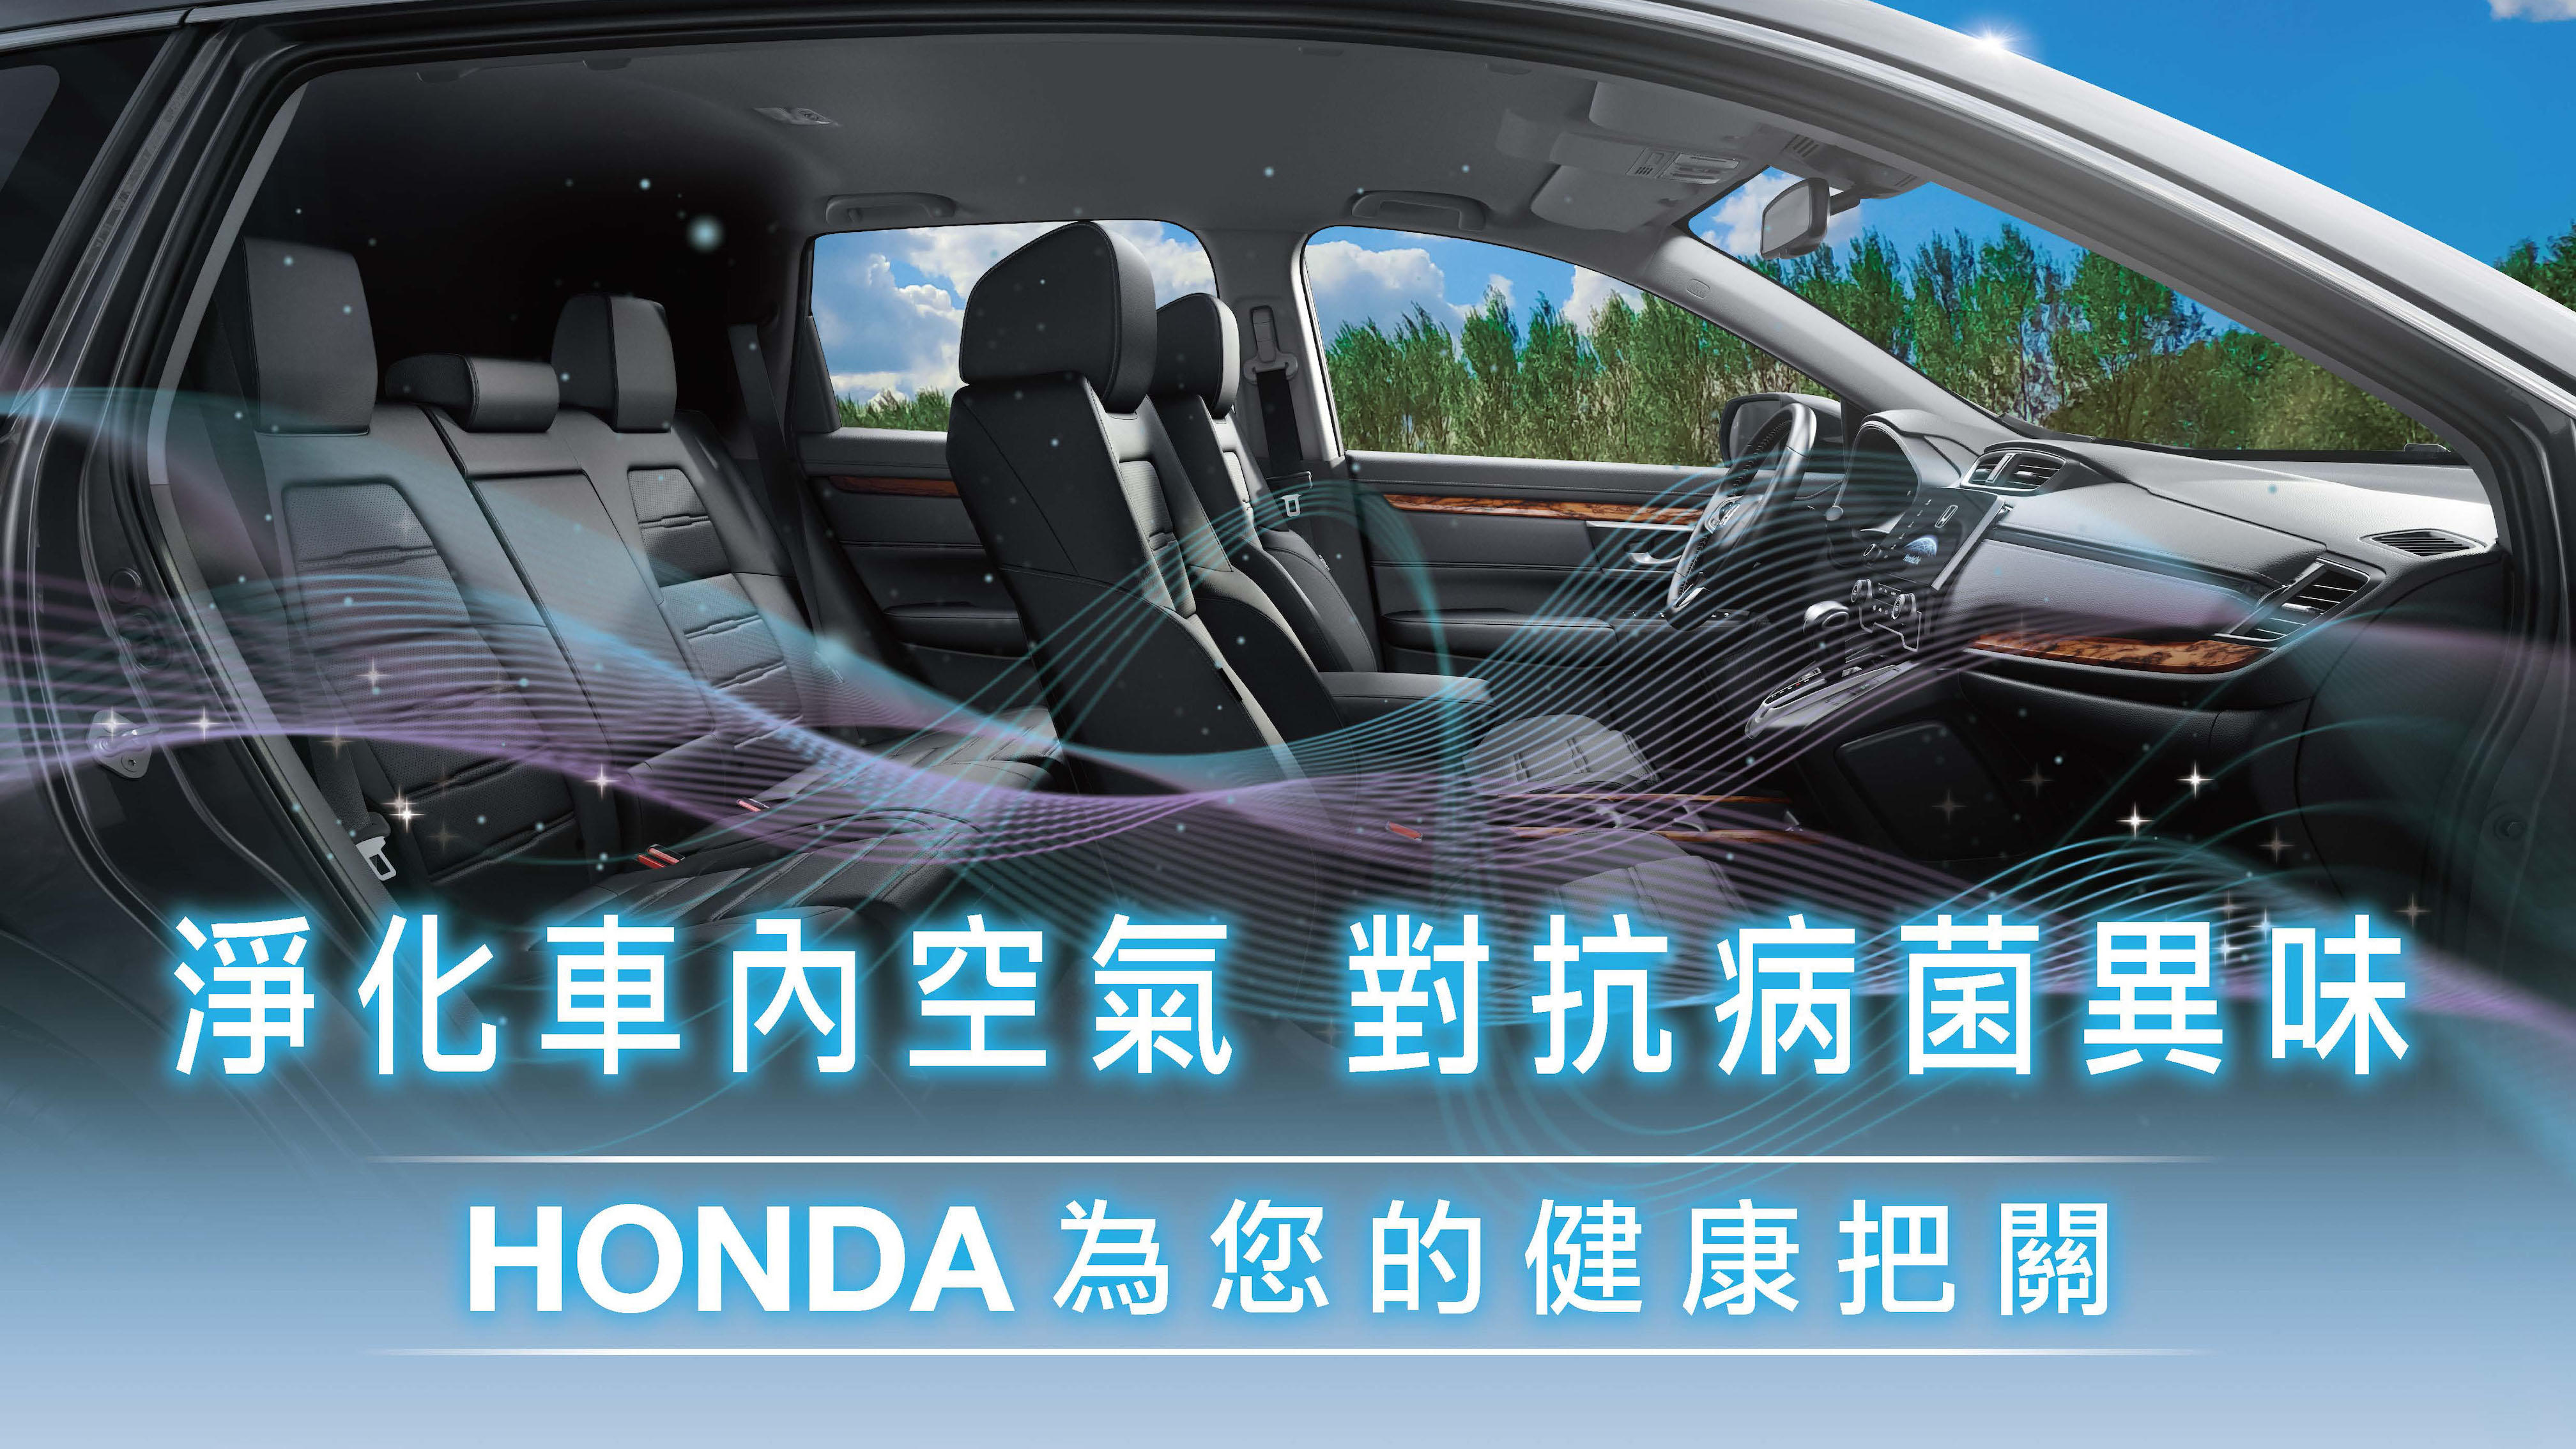 Honda Taiwan 為車主健康把關，限時推出抗菌優惠！